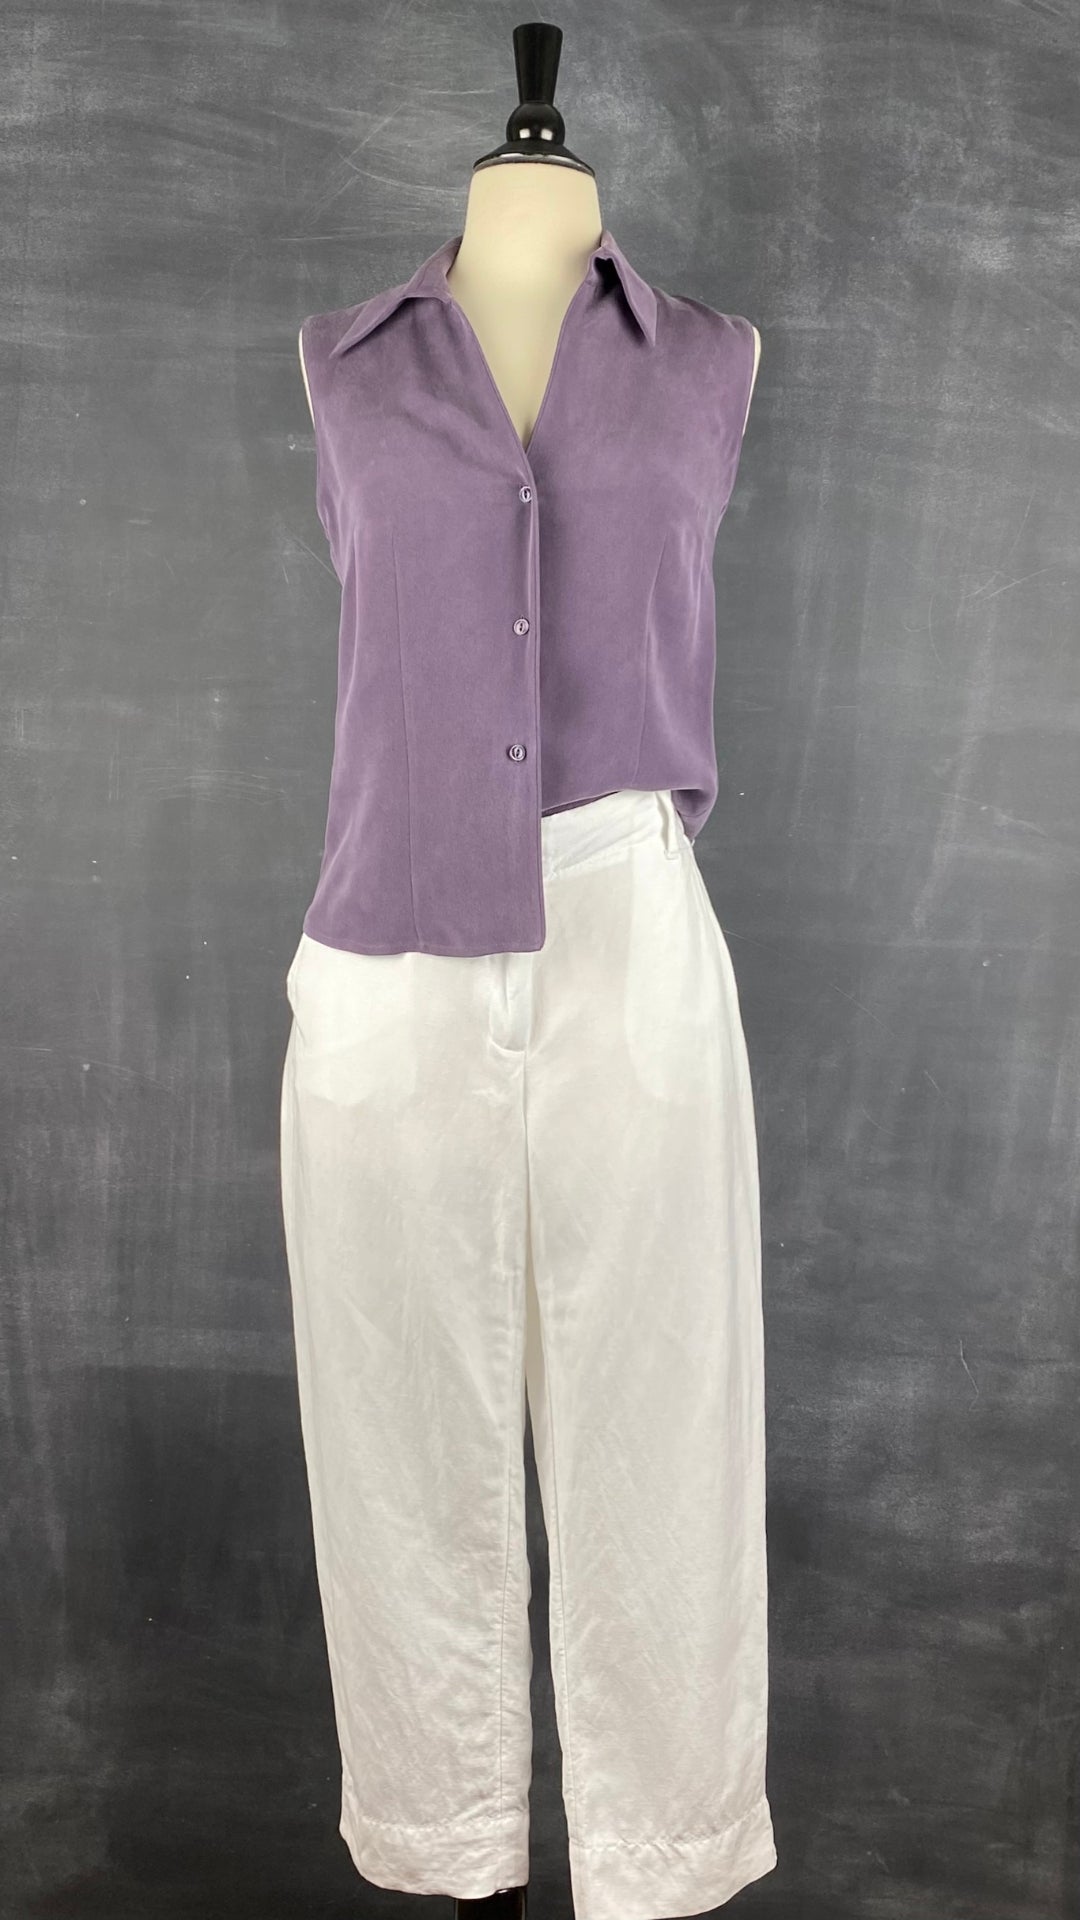 Pantalon blanc longueur 3/4 en mélange de lin Melanie Lyne, taille 4. Vue de l'agencement avec le chemisier en soie sans manches mauve.